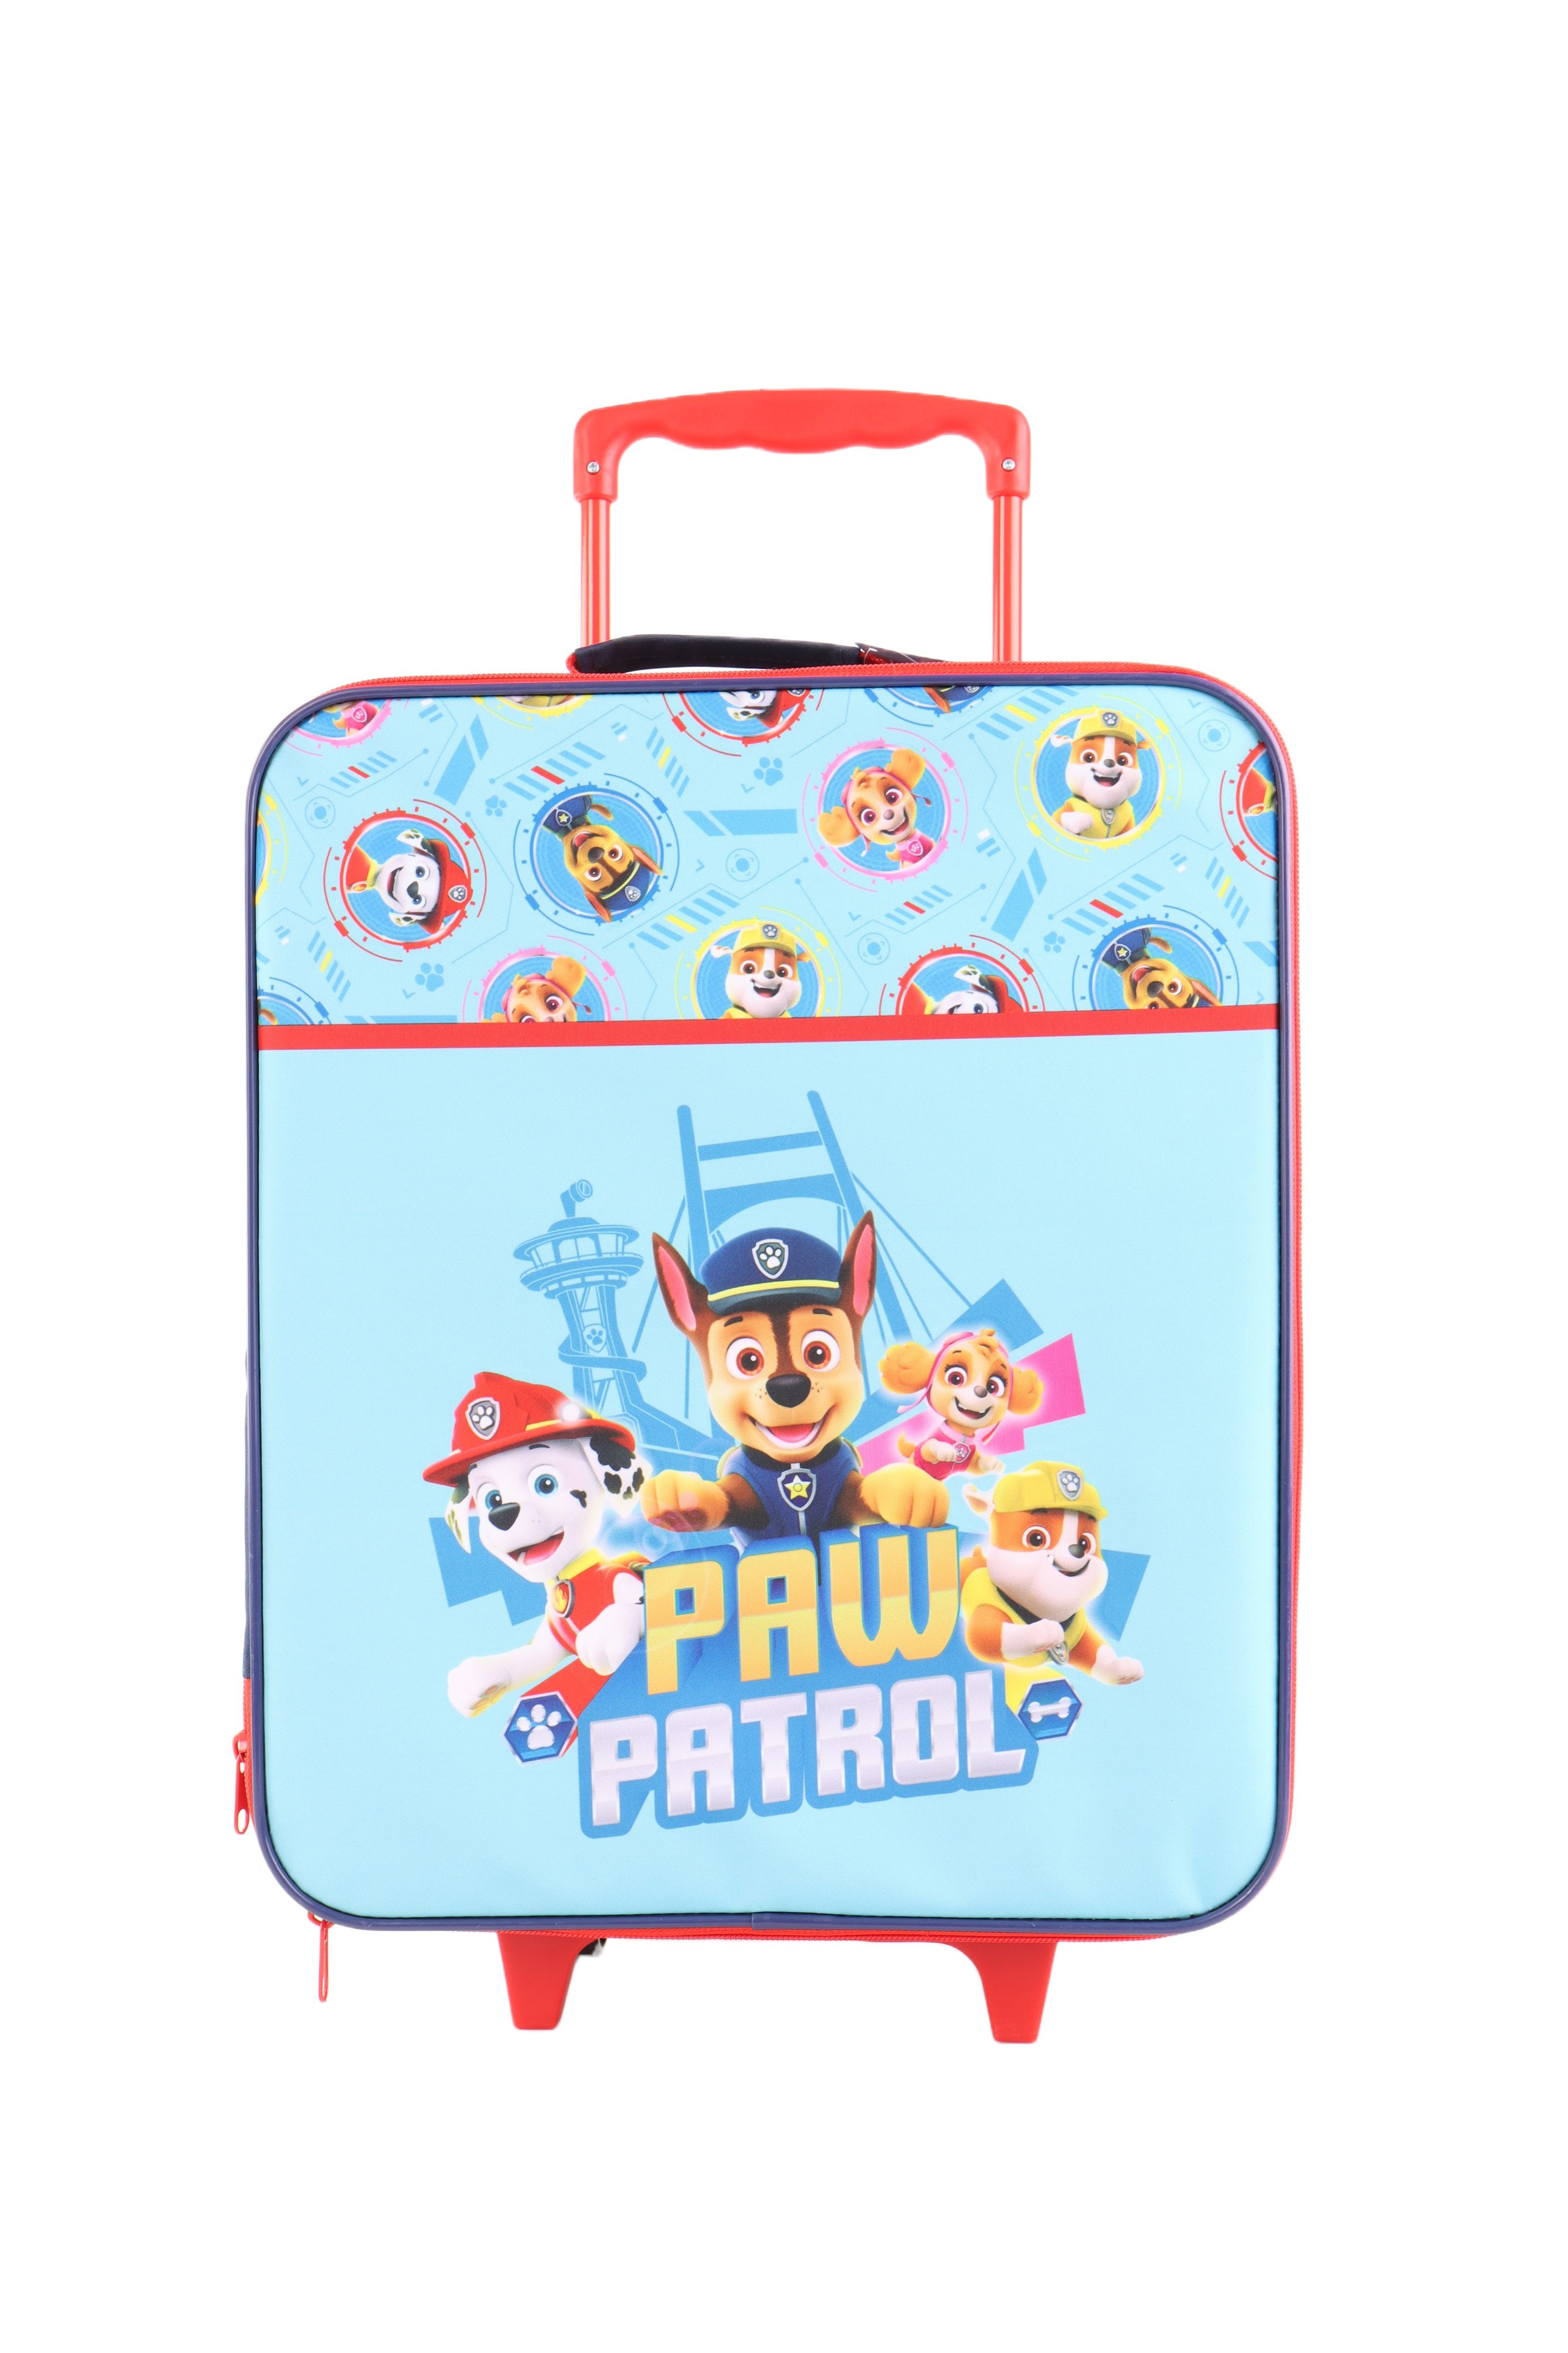 PATROL PAW Rolltasche für Kinderrucksack Radtasche Kinder Tasche Freizeit Schule CM blau-rot 42